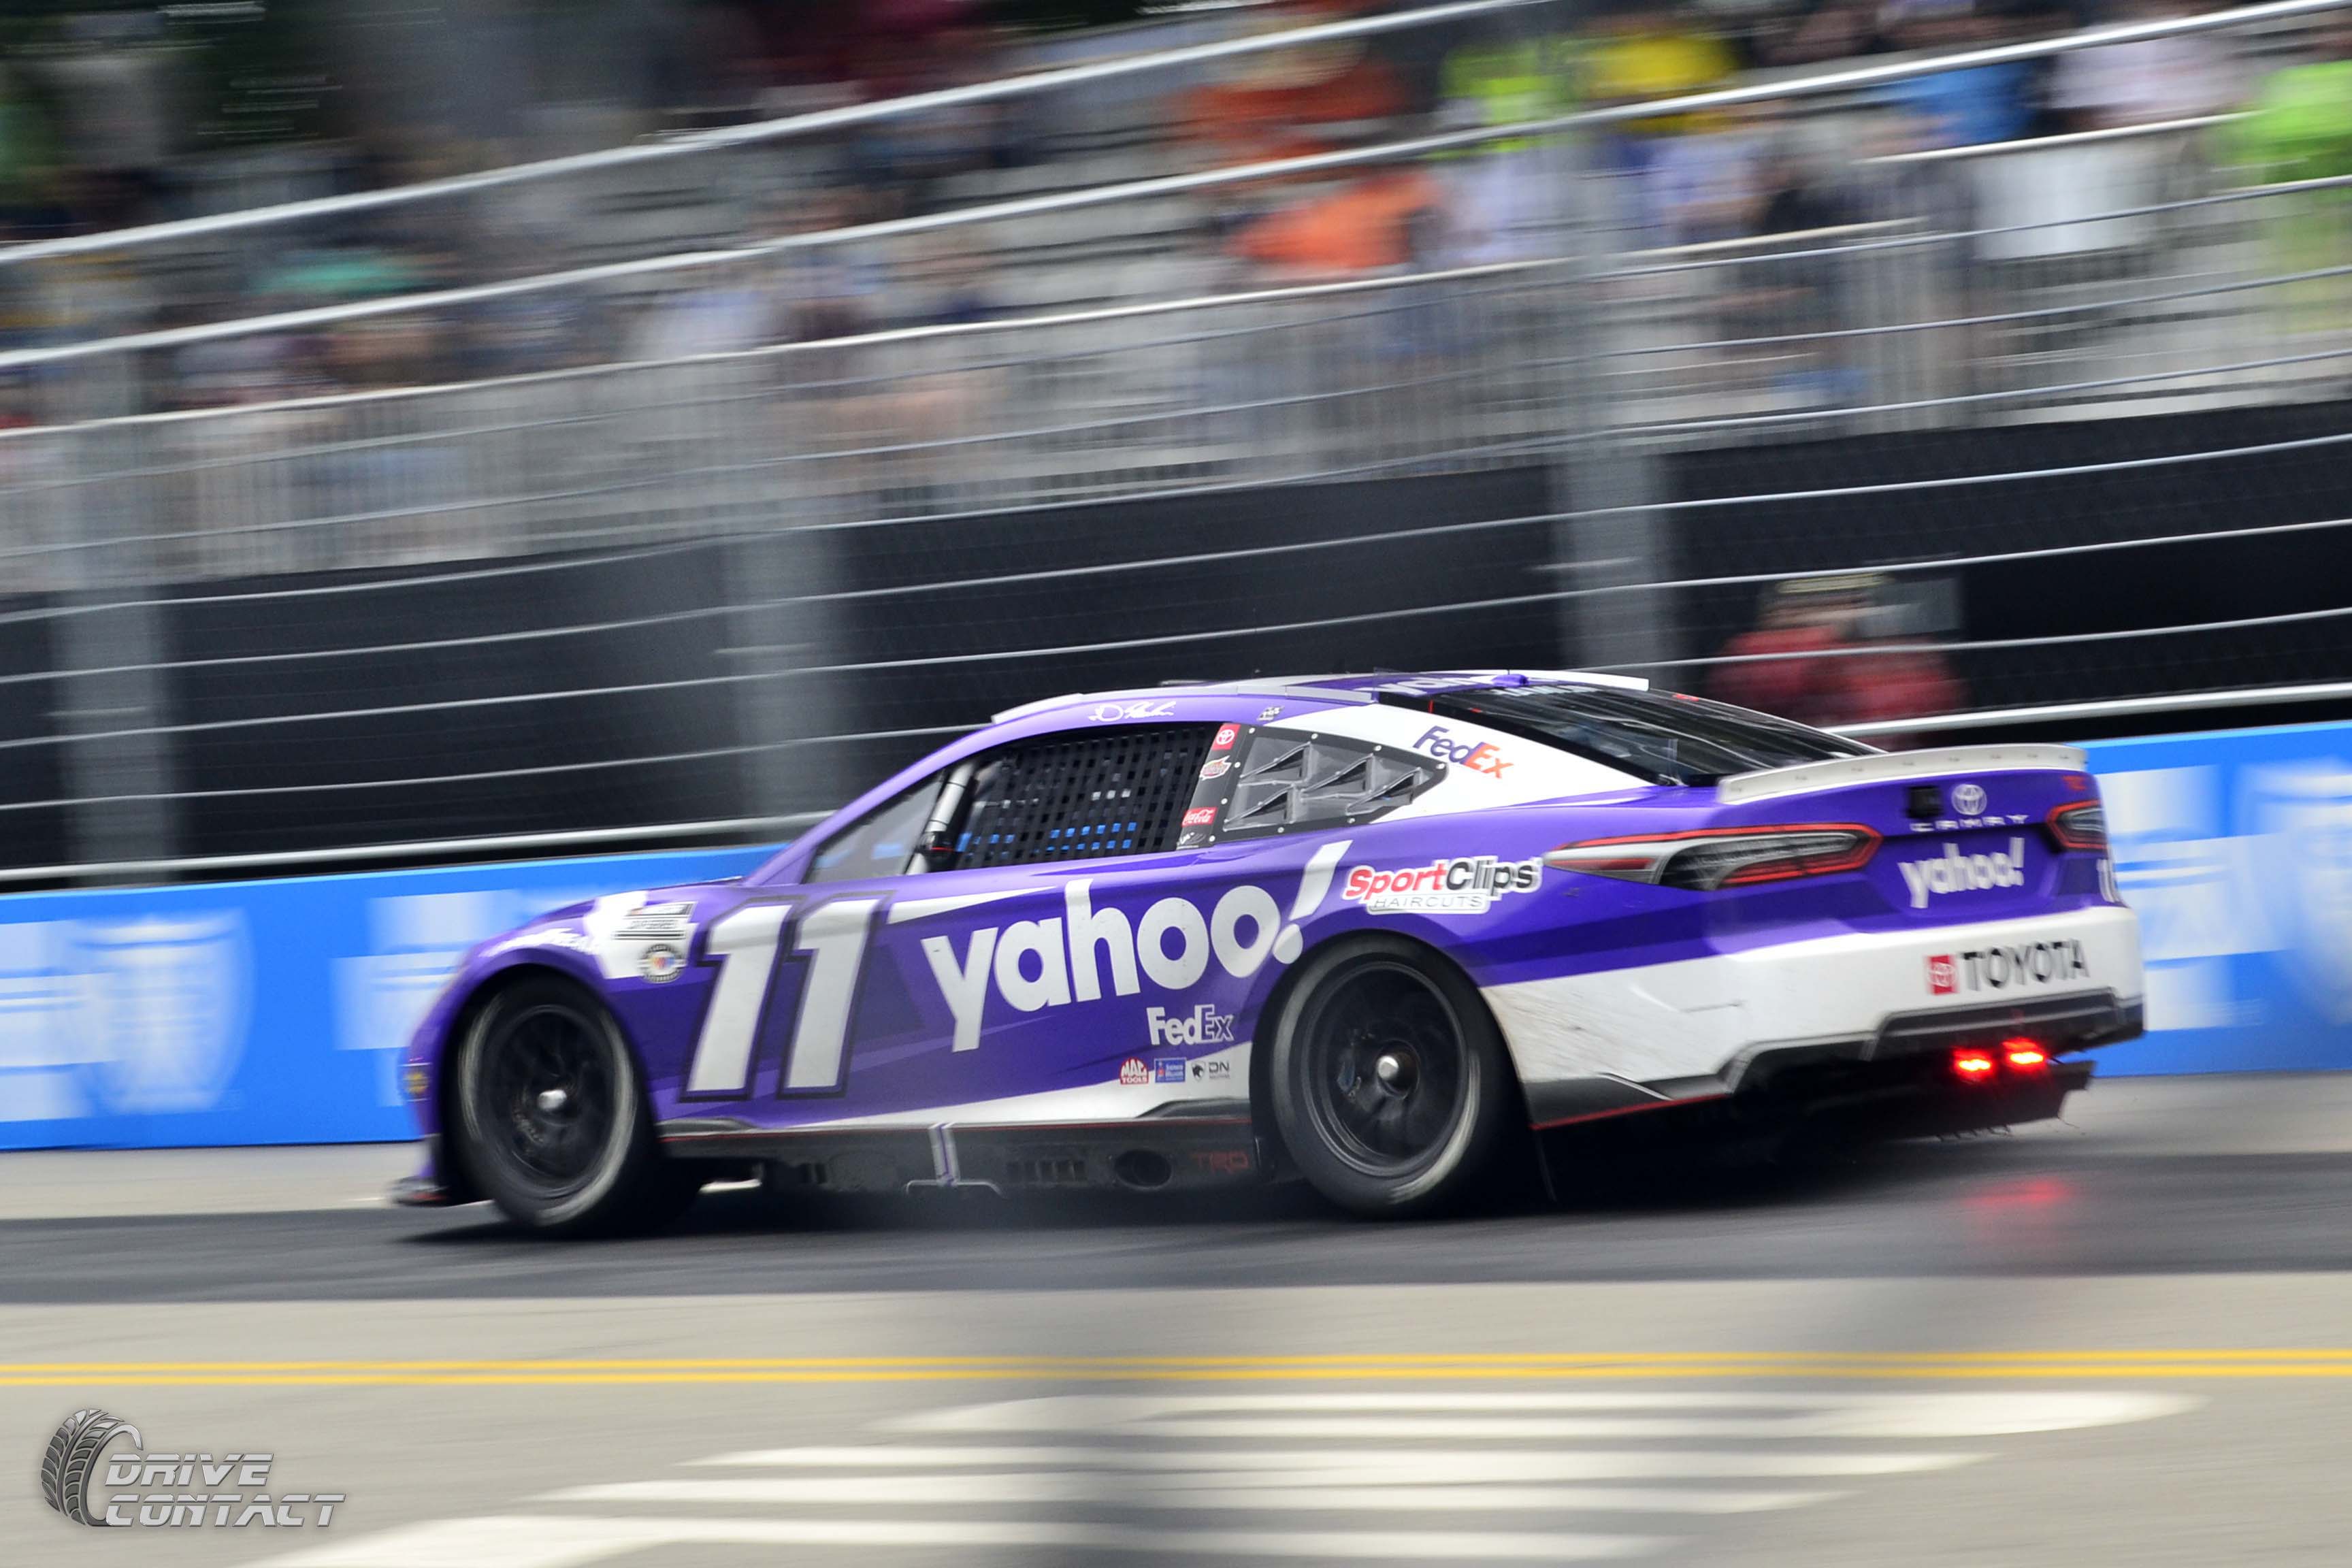 Denny Hamlin will drive the No. 11 Yahoo! Toyota